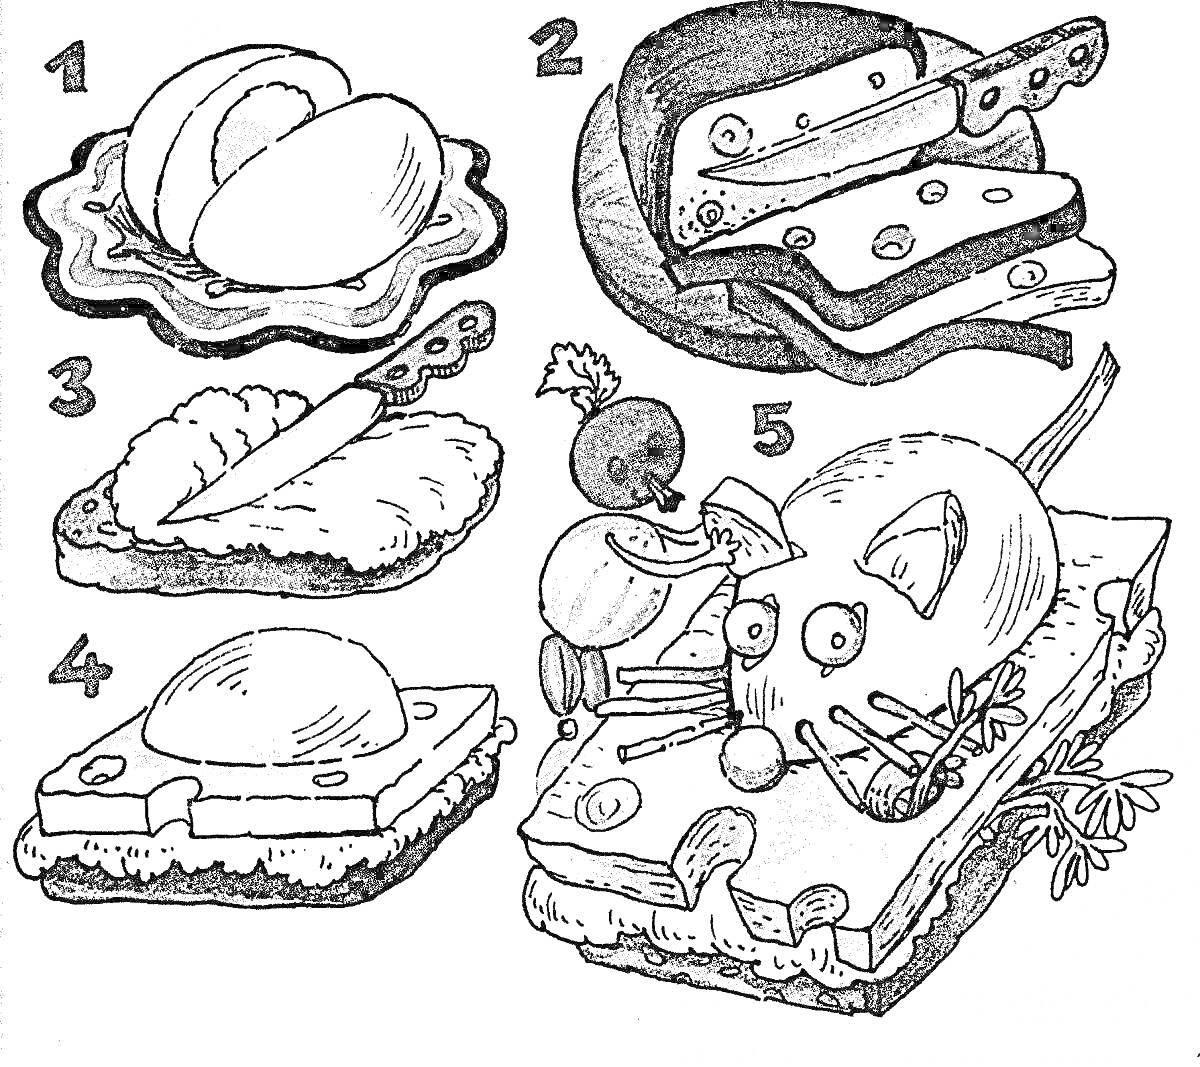 Пять этапов приготовления бутерброда - нарезка яйца, сыра и овощей, укладка ингридиентов на хлеб, готовый бутерброд с мышонком